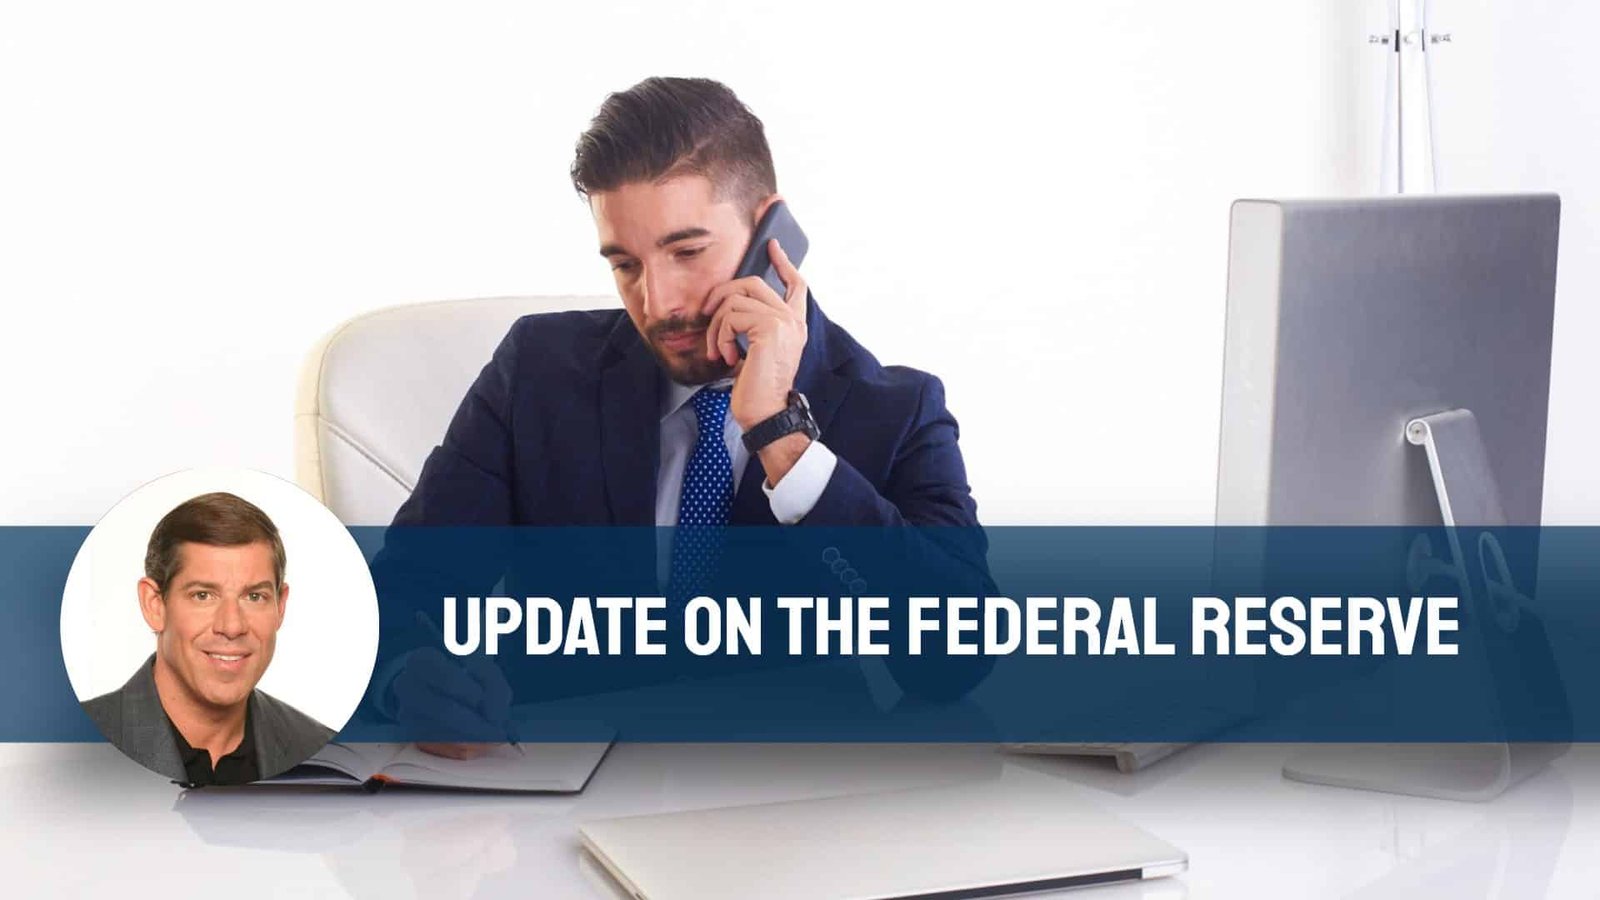 Federal Reserve Update